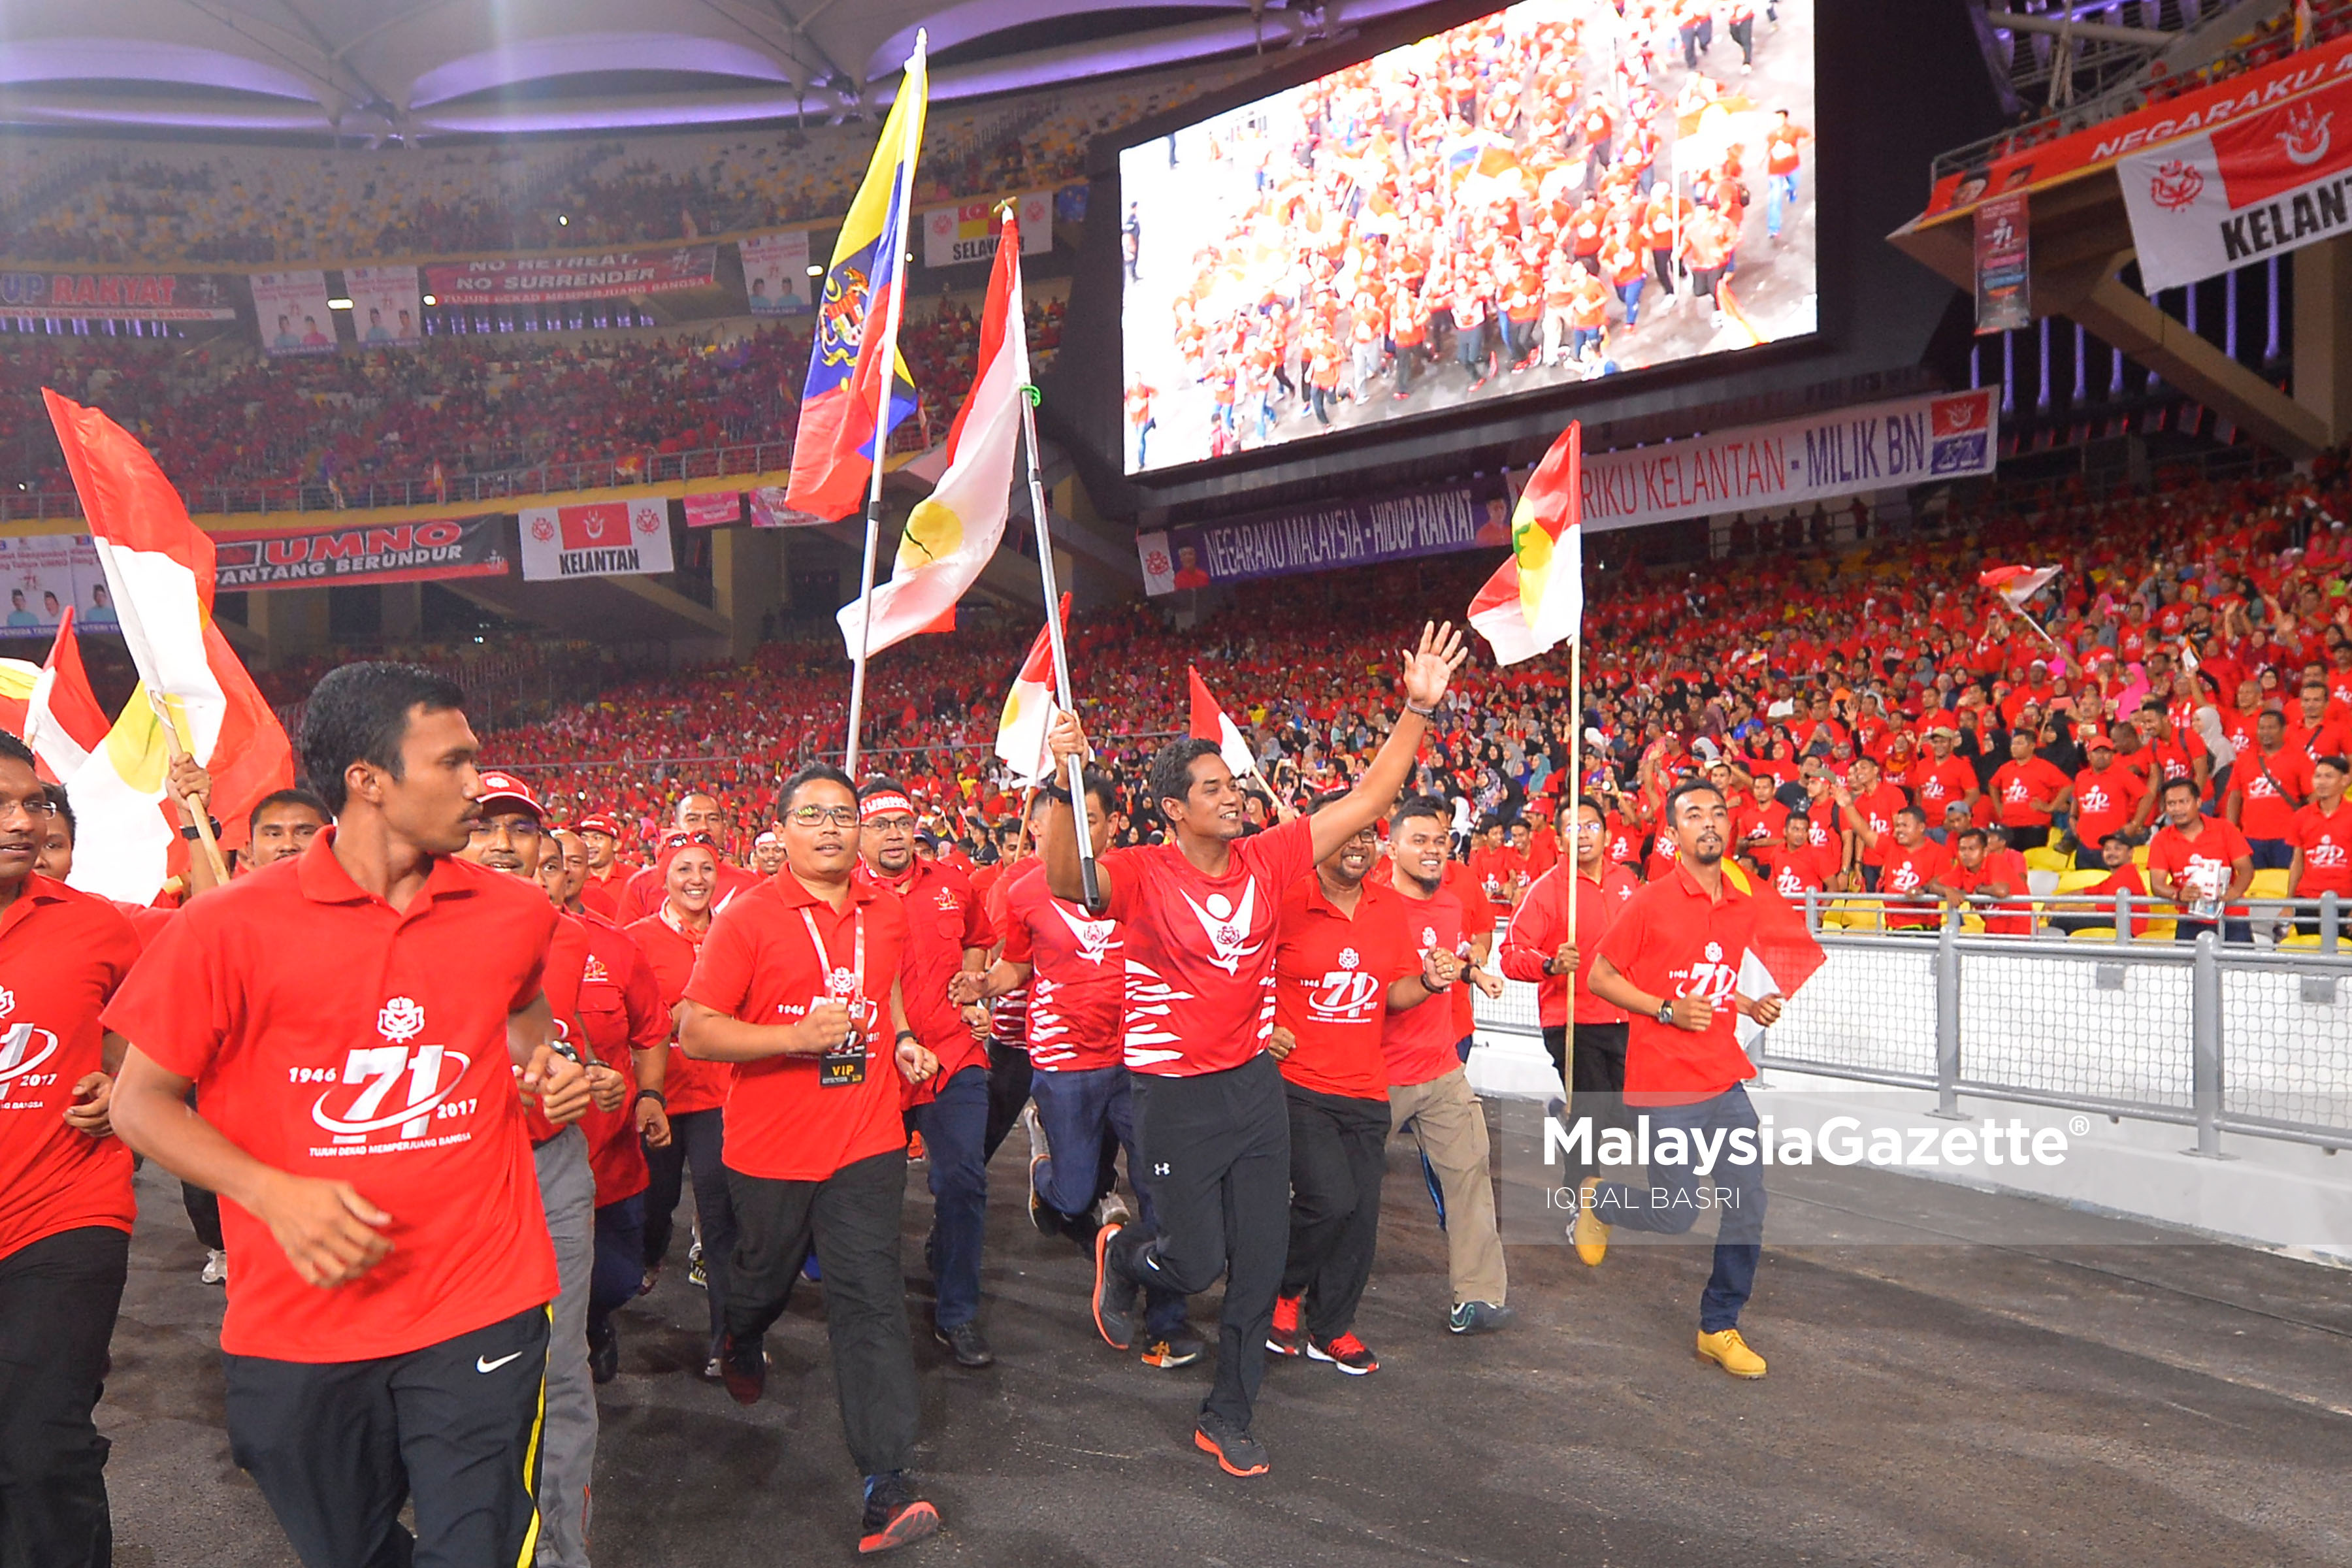 Ketua Pergerakan Pemuda UMNO, Yb Khairy Jamaluddin mengetuai larian sambil membawa bendera pada Sambutan Hari Ulang Tahun UMNO ke-71 di Stadium Nasional Bukit Jalil, Kuala Lumpur. foto IQBAL BASRI, 11 MEI 2017.